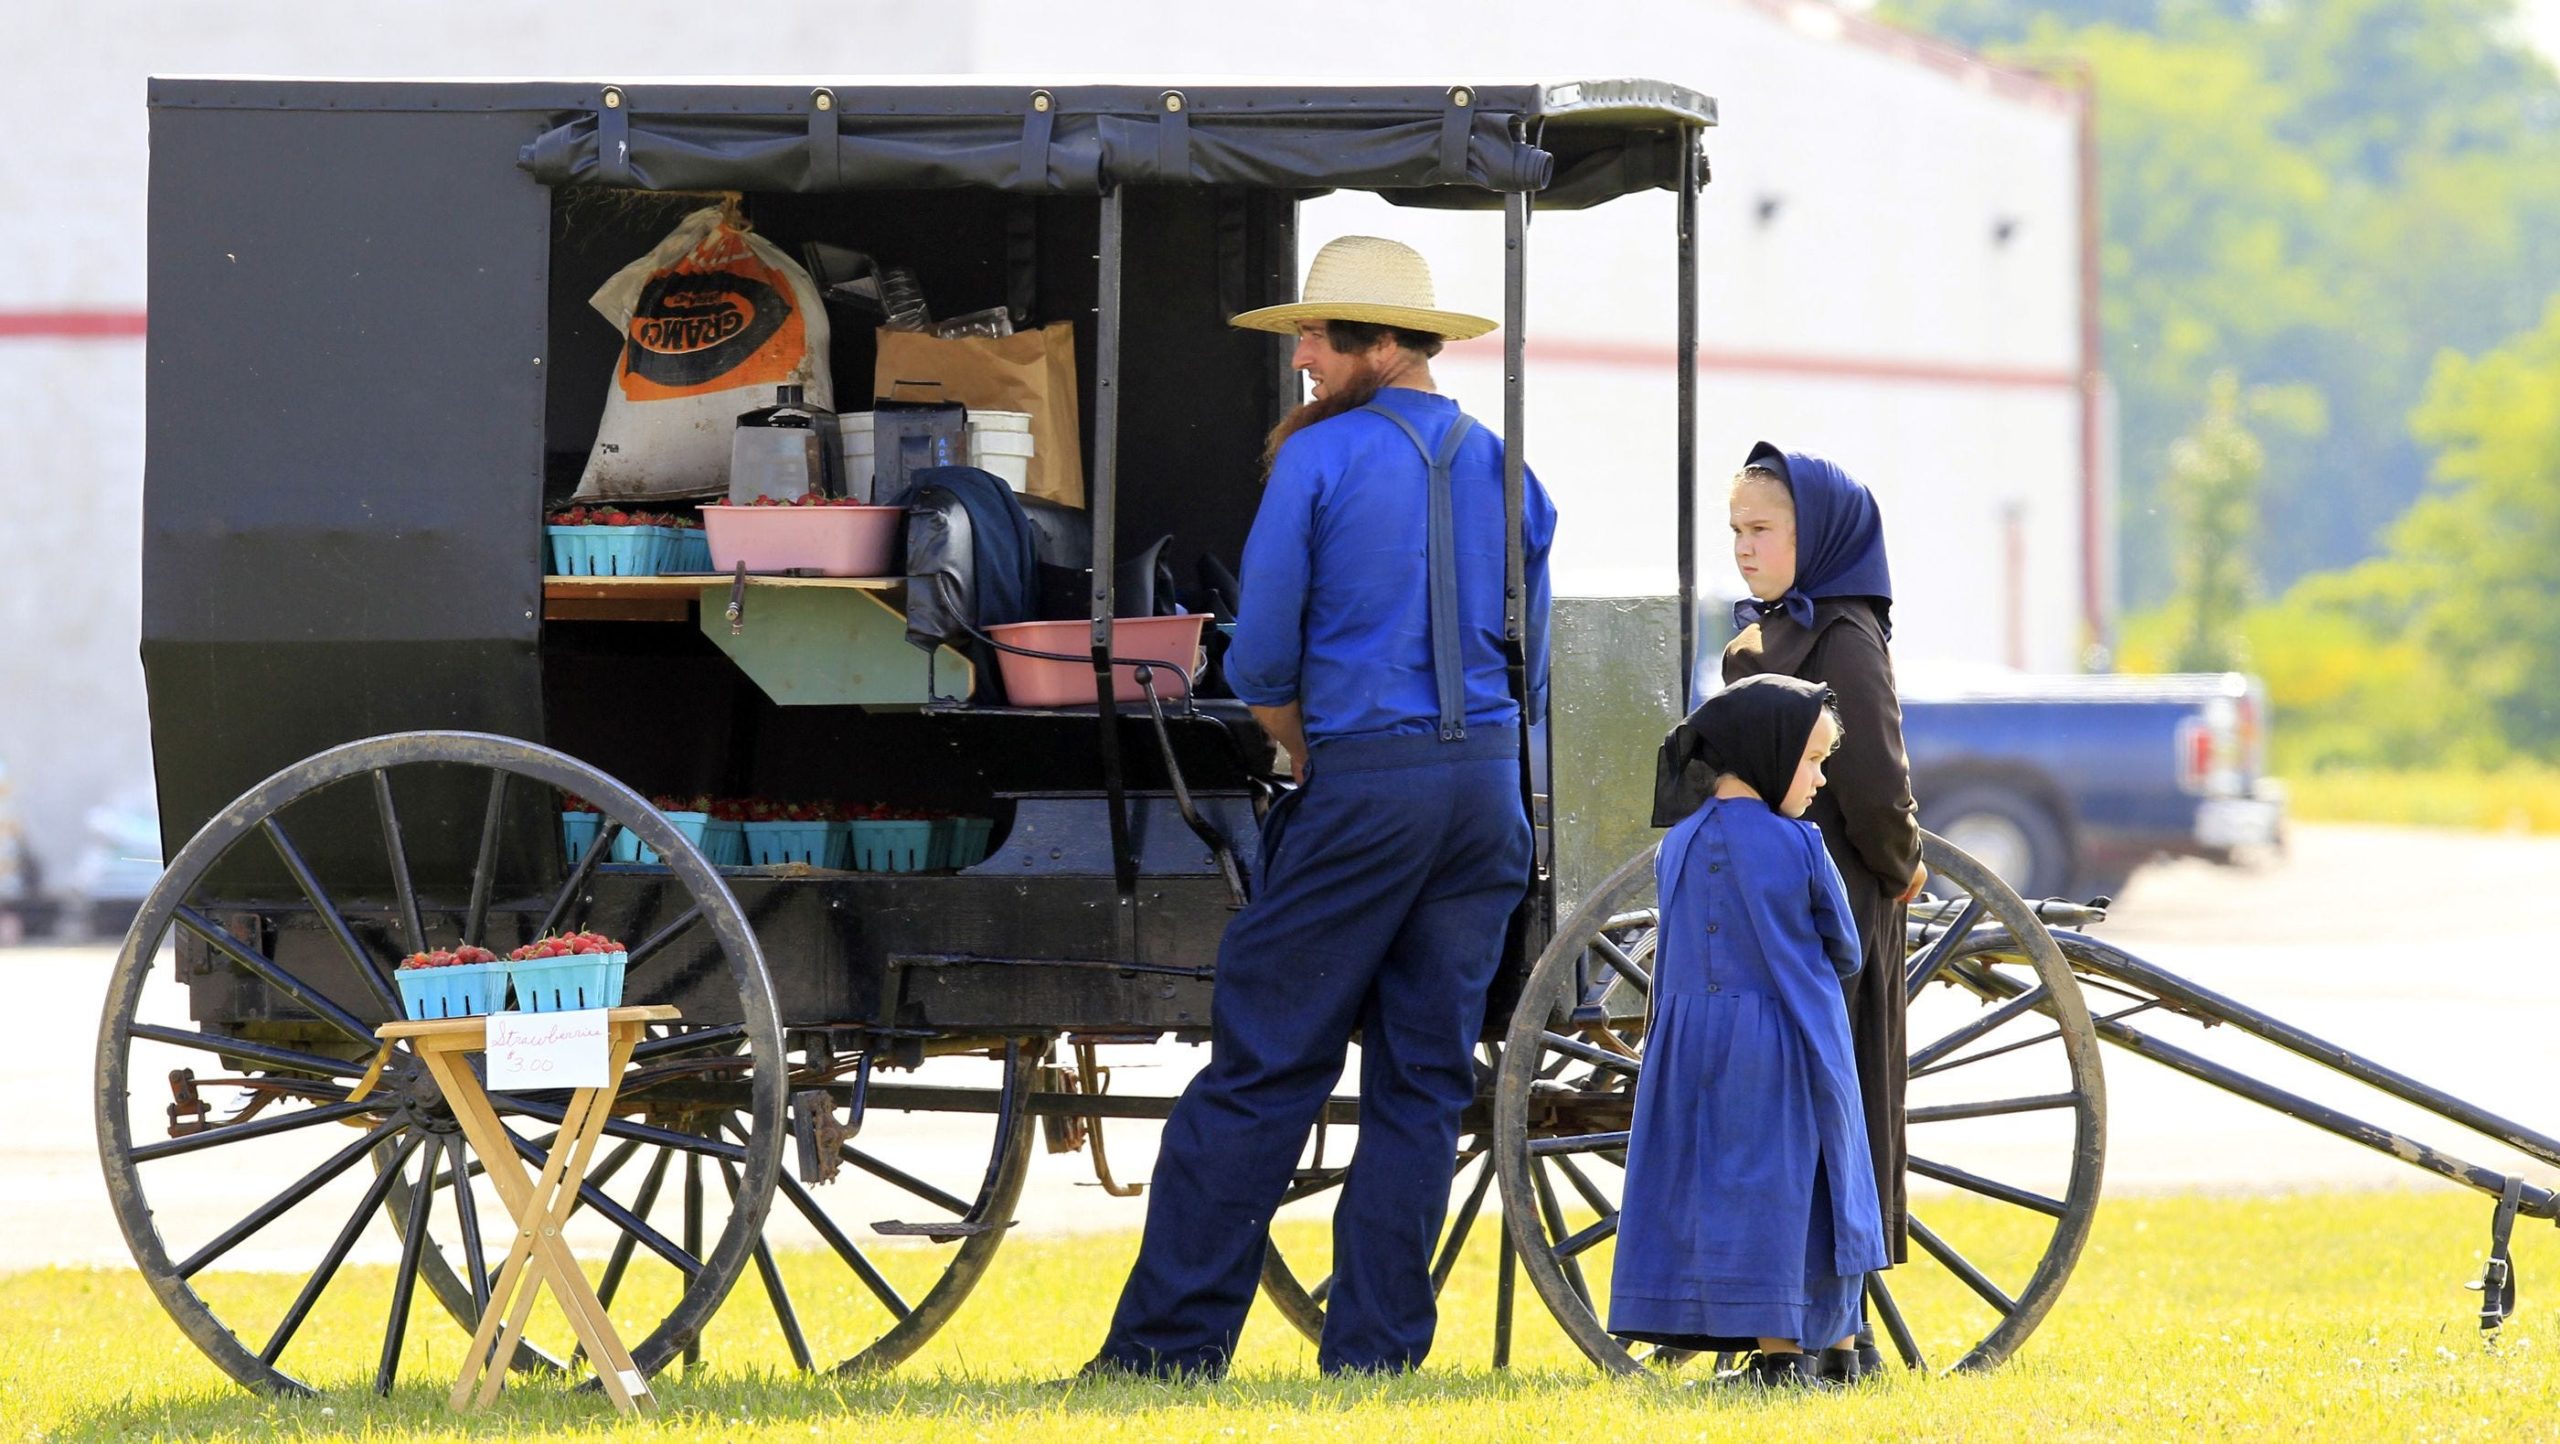 ΗΠΑ: Amish βίασαν την 13χρονη αδερφή τους, την άφησαν έγκυο αλλά ως εκ θαύματος δεν θα πάνε φυλακή